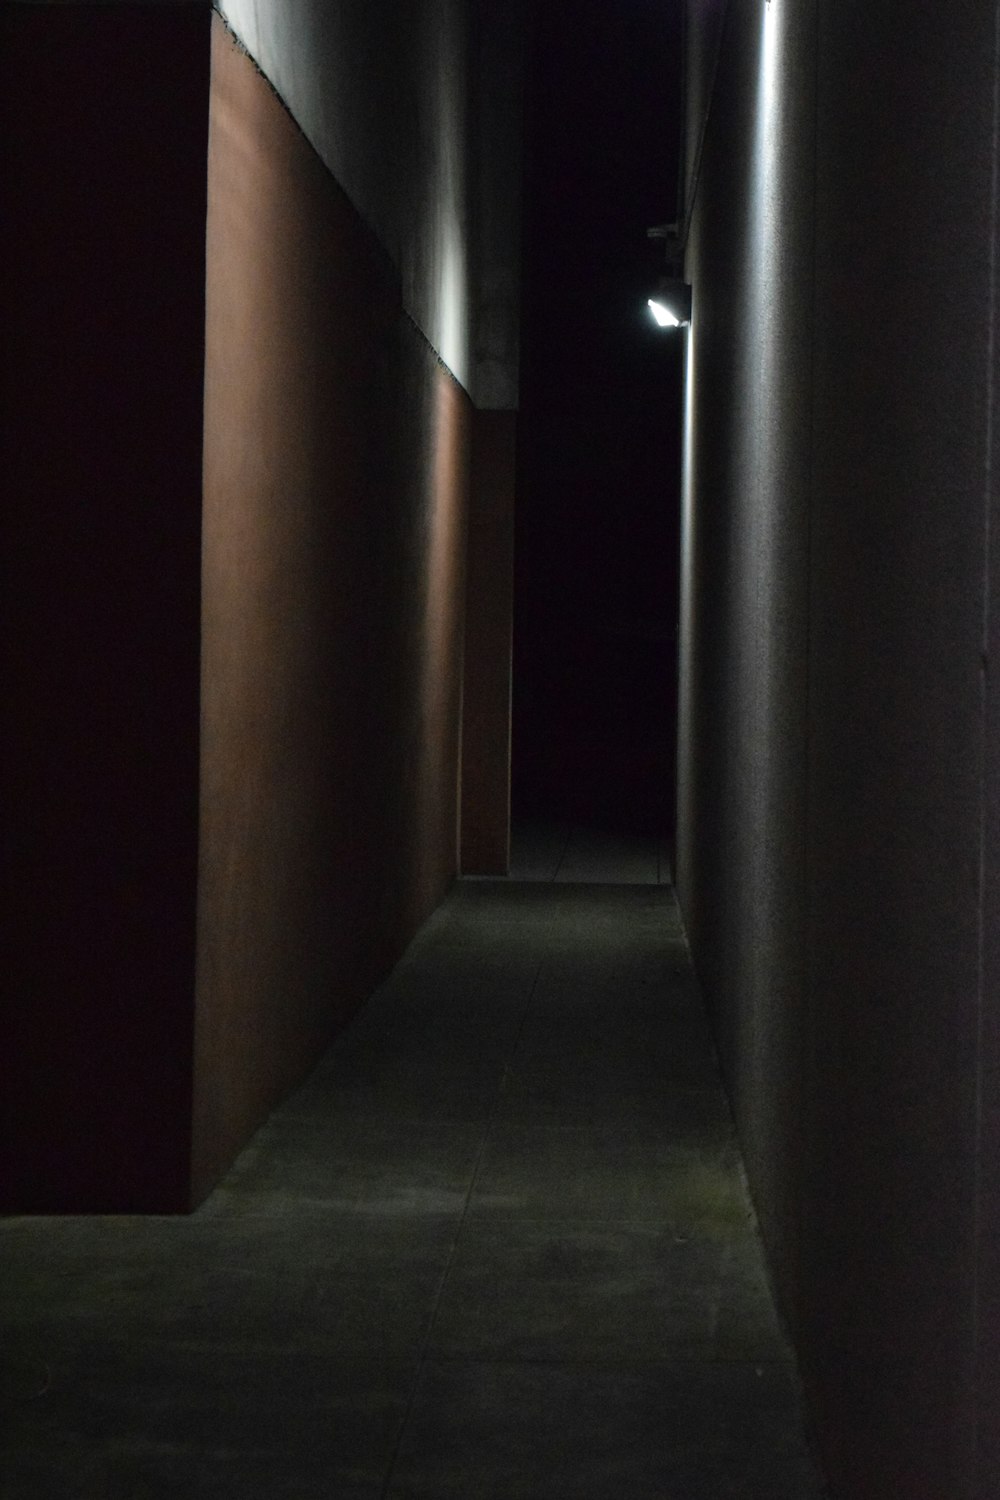 corredor de concreto cinza sem pessoas